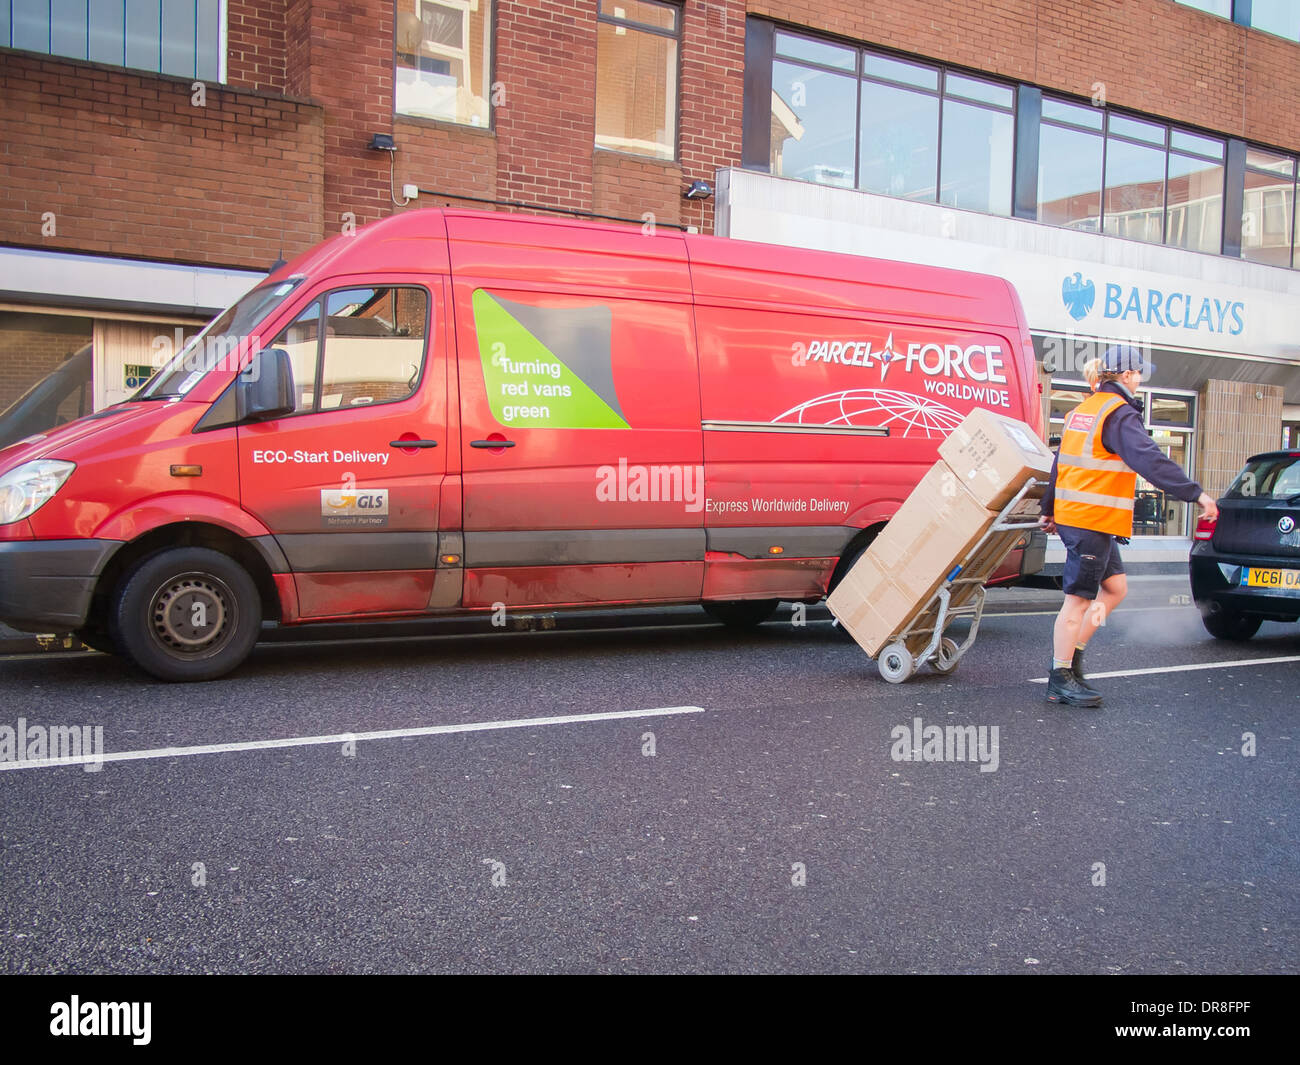 Parcel Force Lieferung van mit Auslieferungsfahrer ziehen gestapelt Pakete über eine Straße mit einem Handtruck-Feld-Träger Stockfoto